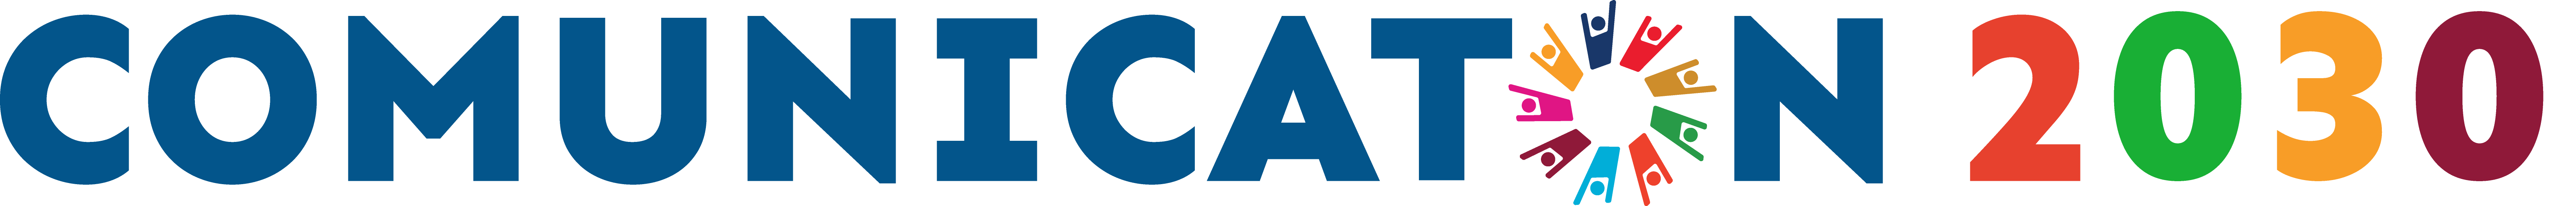 Logo nuevo-04